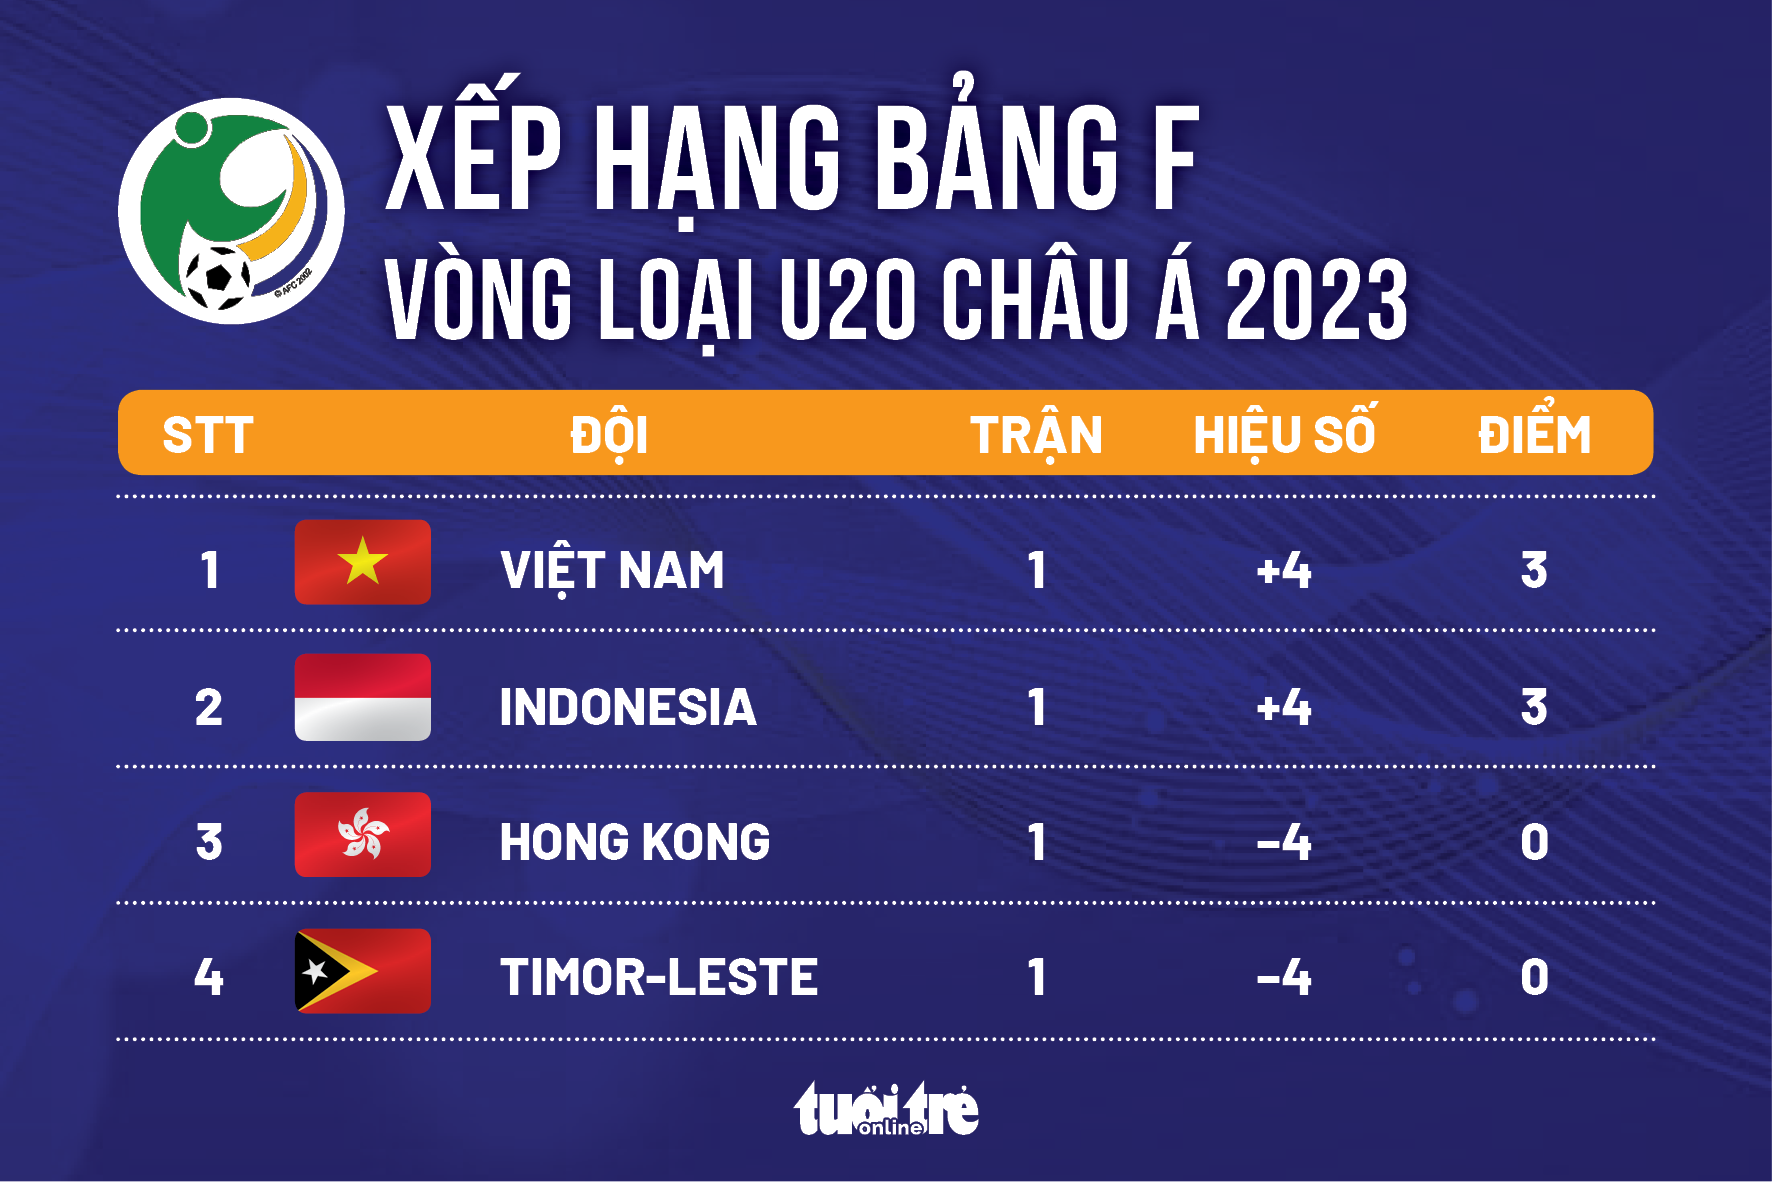 Xếp hạng bảng F vòng loại U20 châu Á 2023: U20 Việt Nam nhất, Indonesia nhì - Ảnh 1.